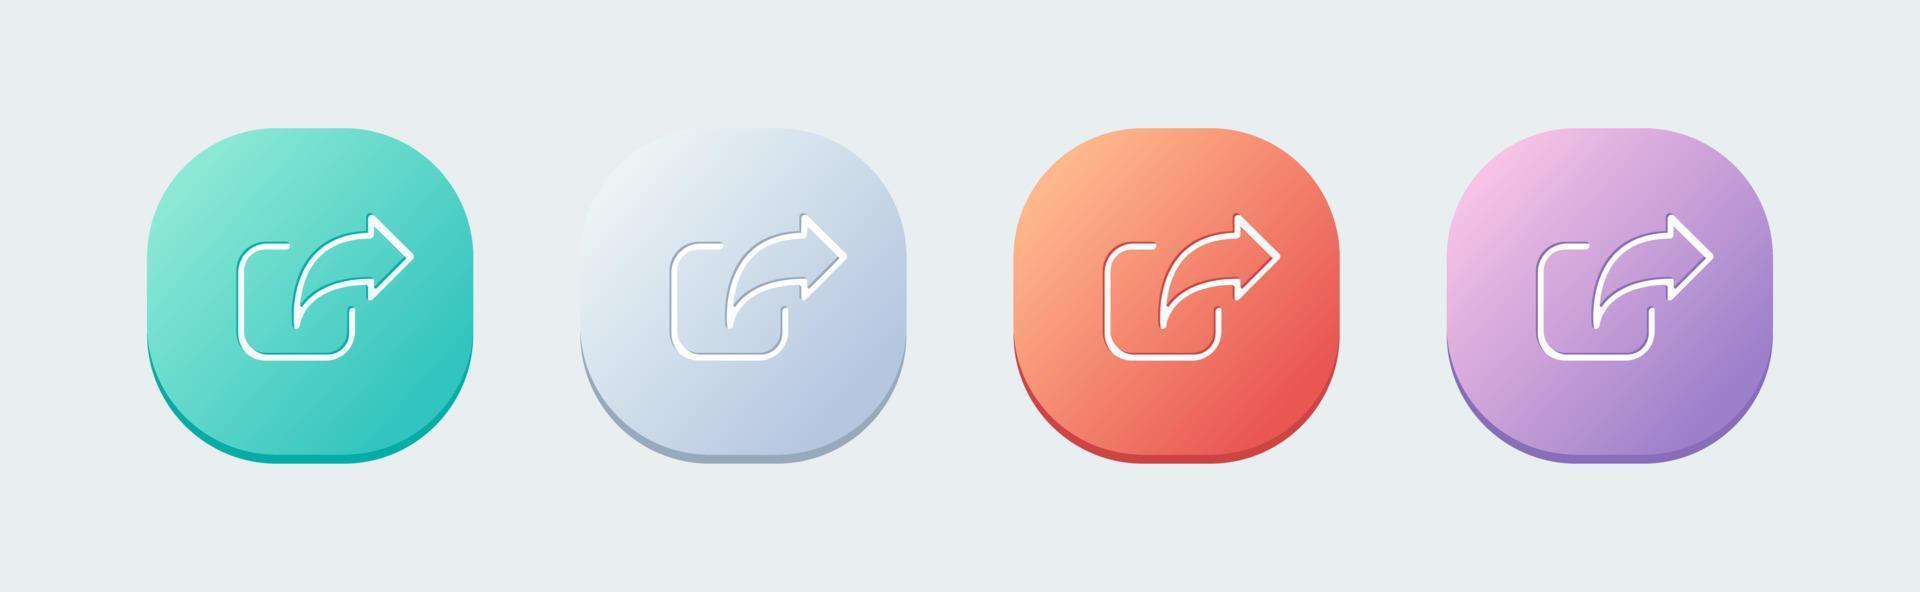 icône de ligne de partage dans un style design plat. lien signe illustration vectorielle. vecteur